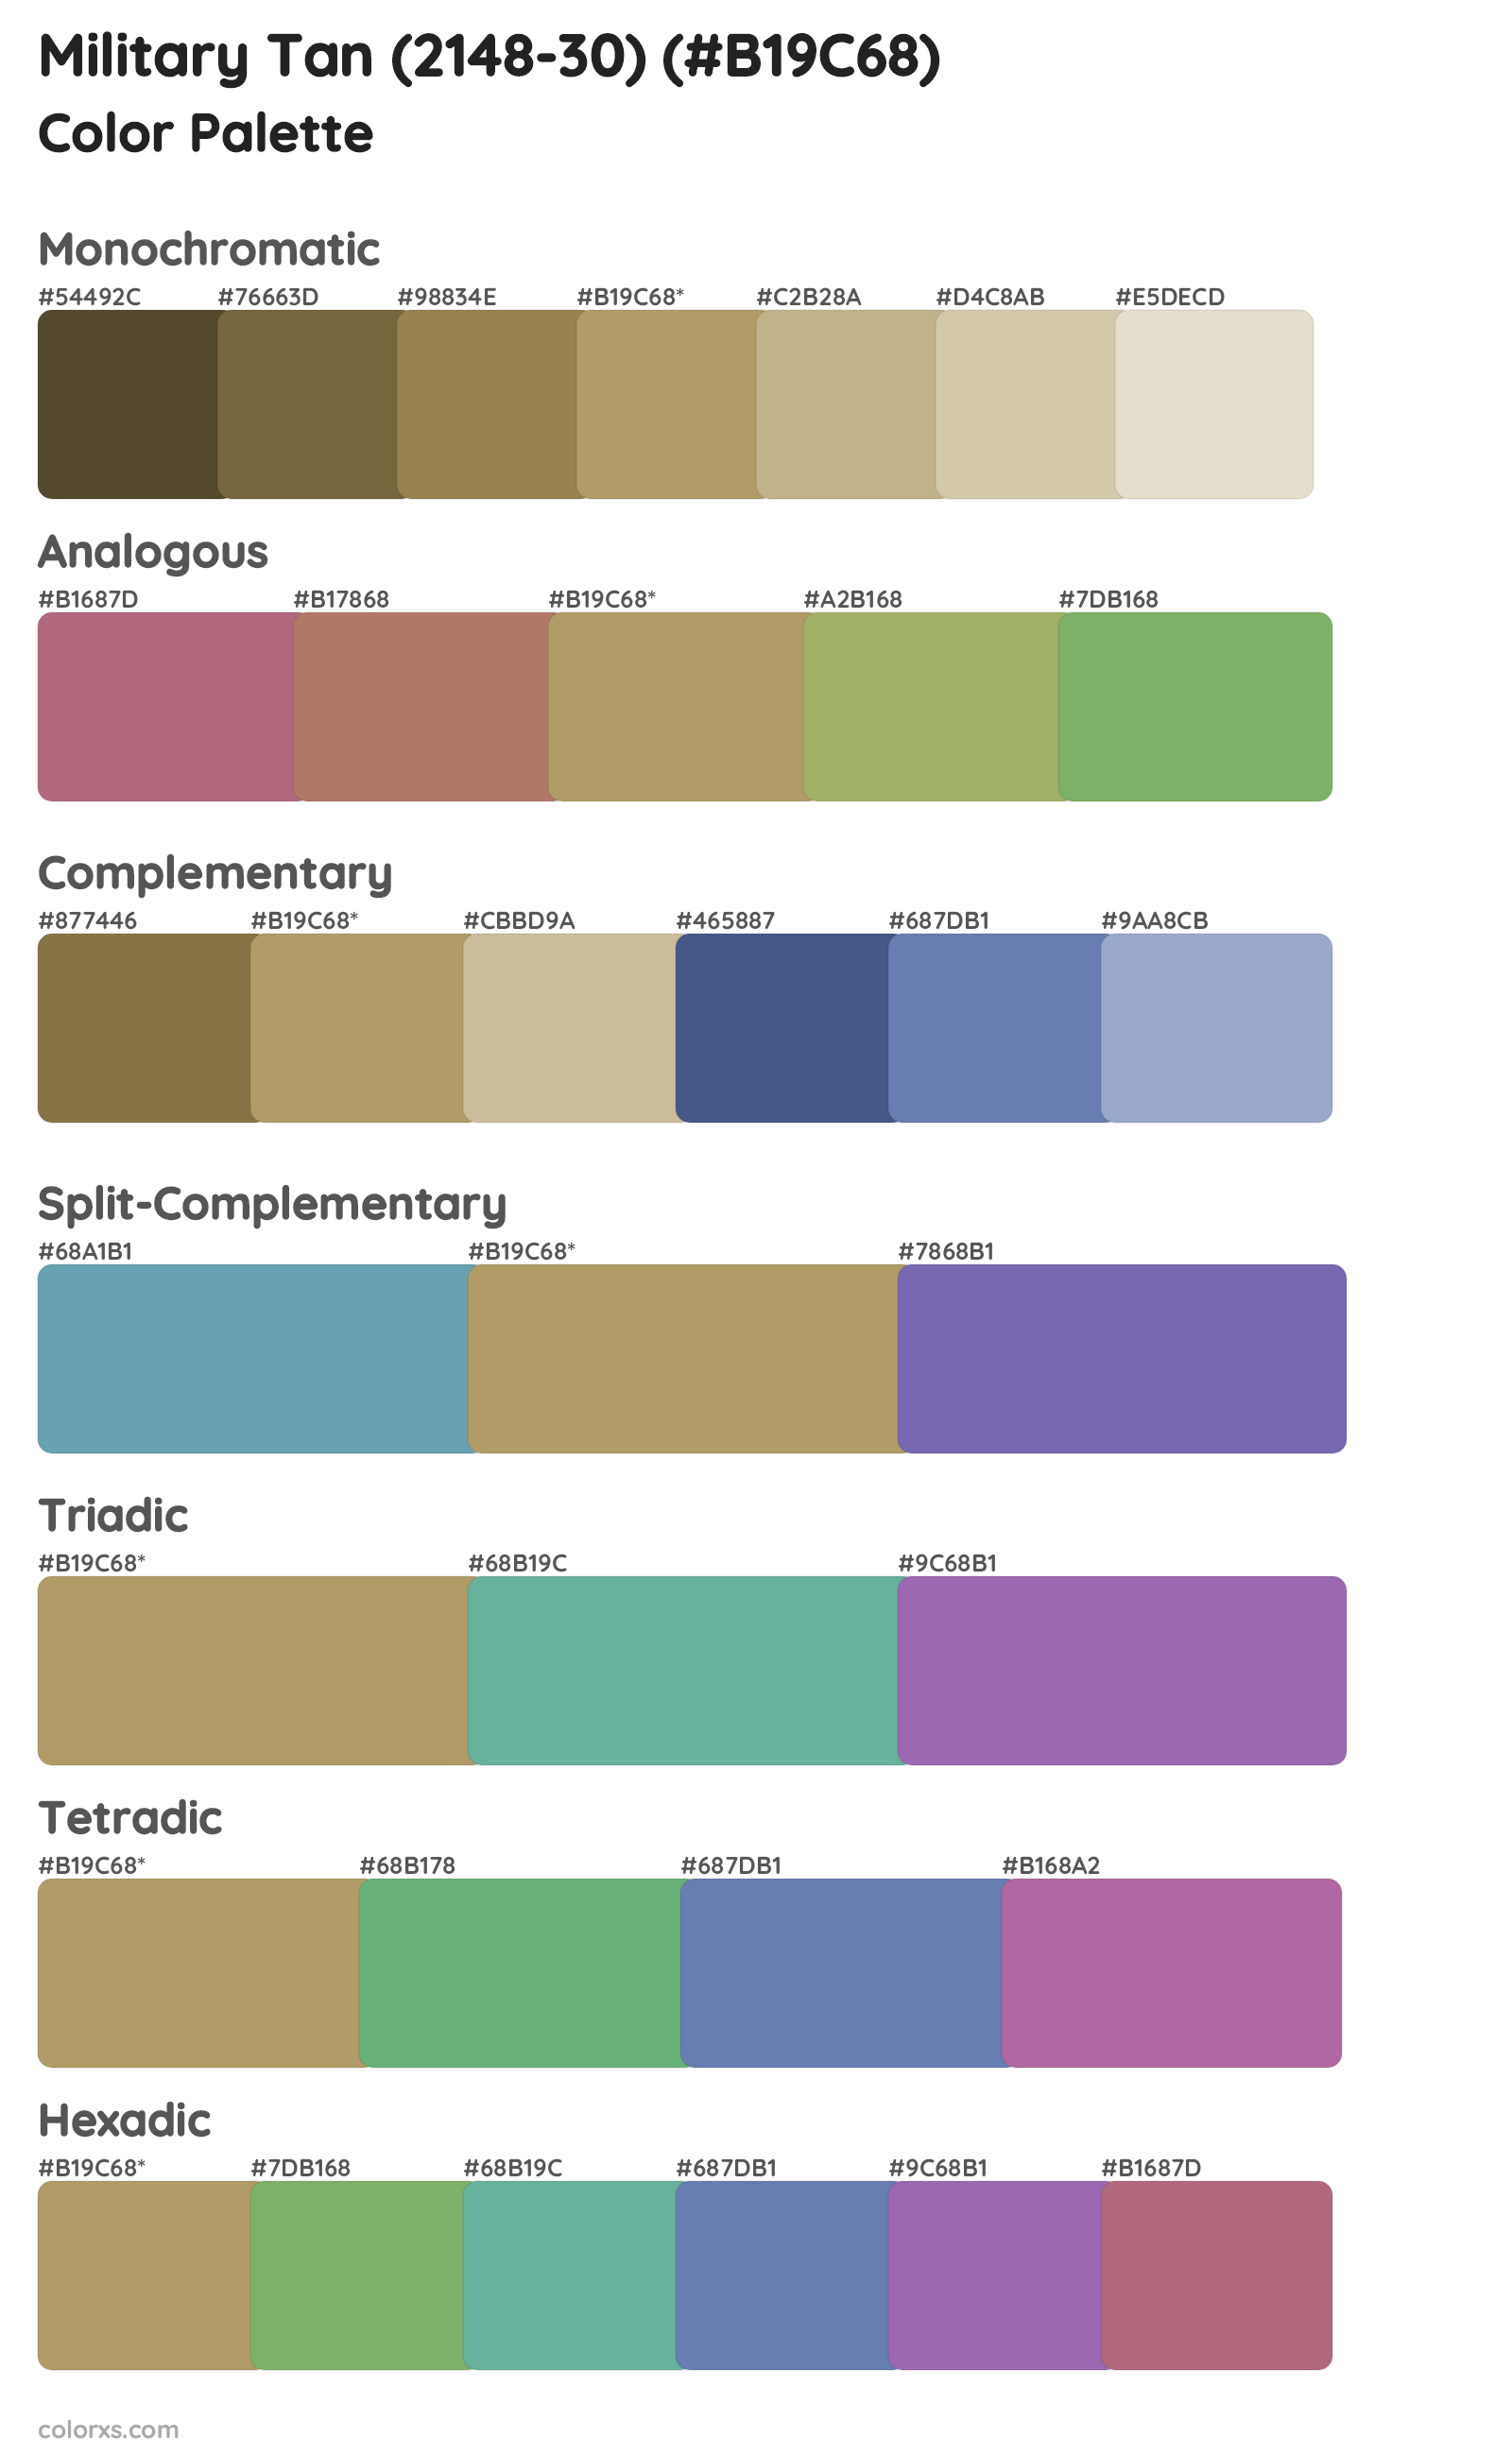 Military Tan (2148-30) Color Scheme Palettes